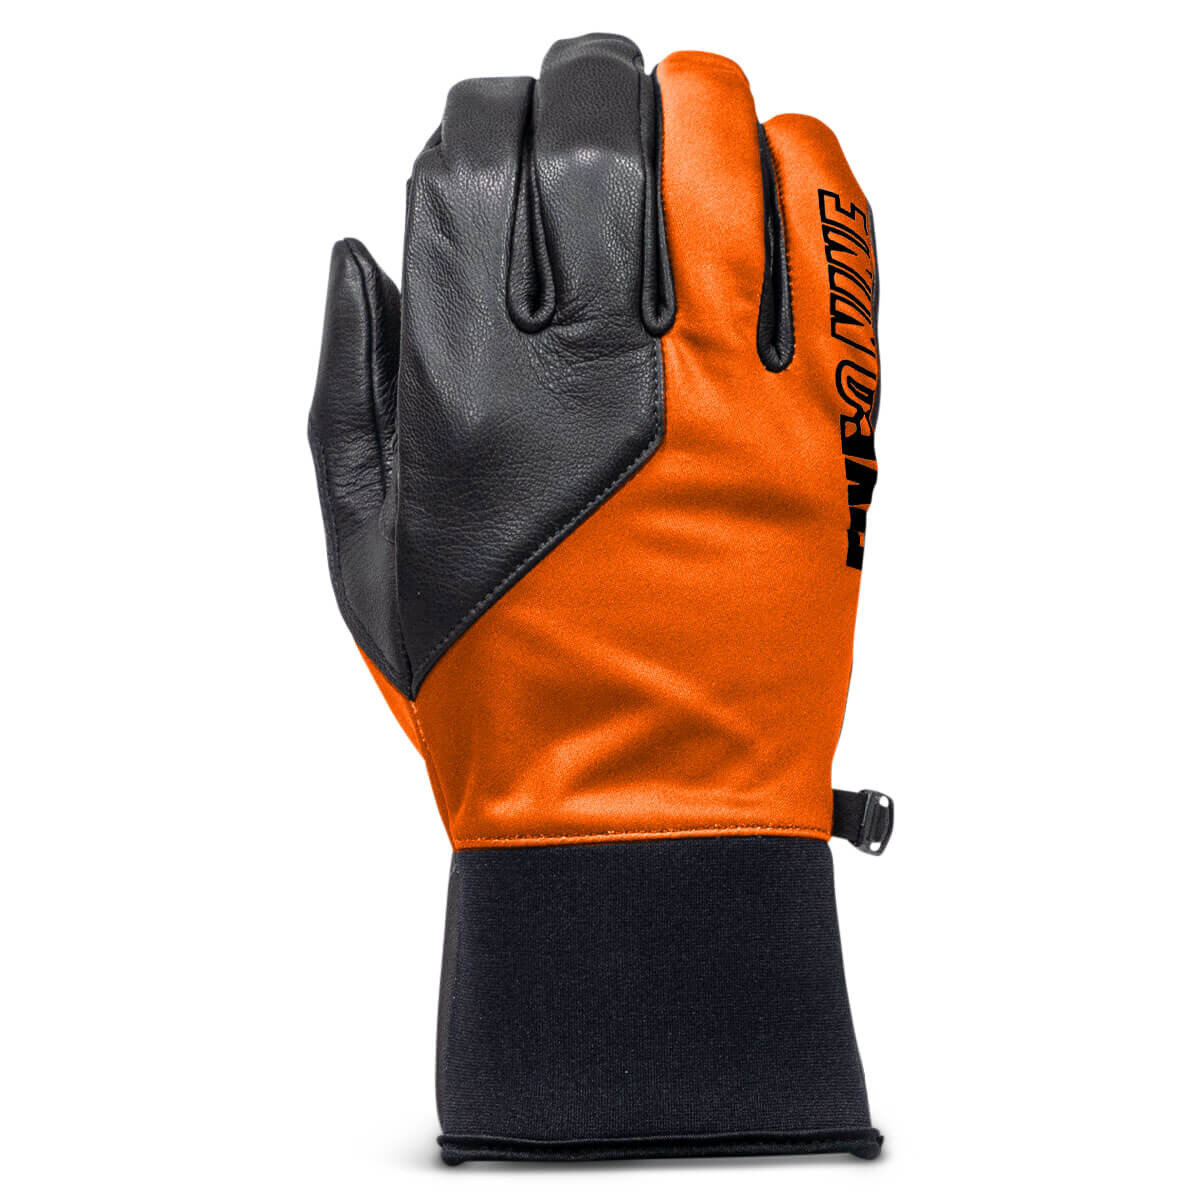 Handskar 509 Factor Pro, Orange